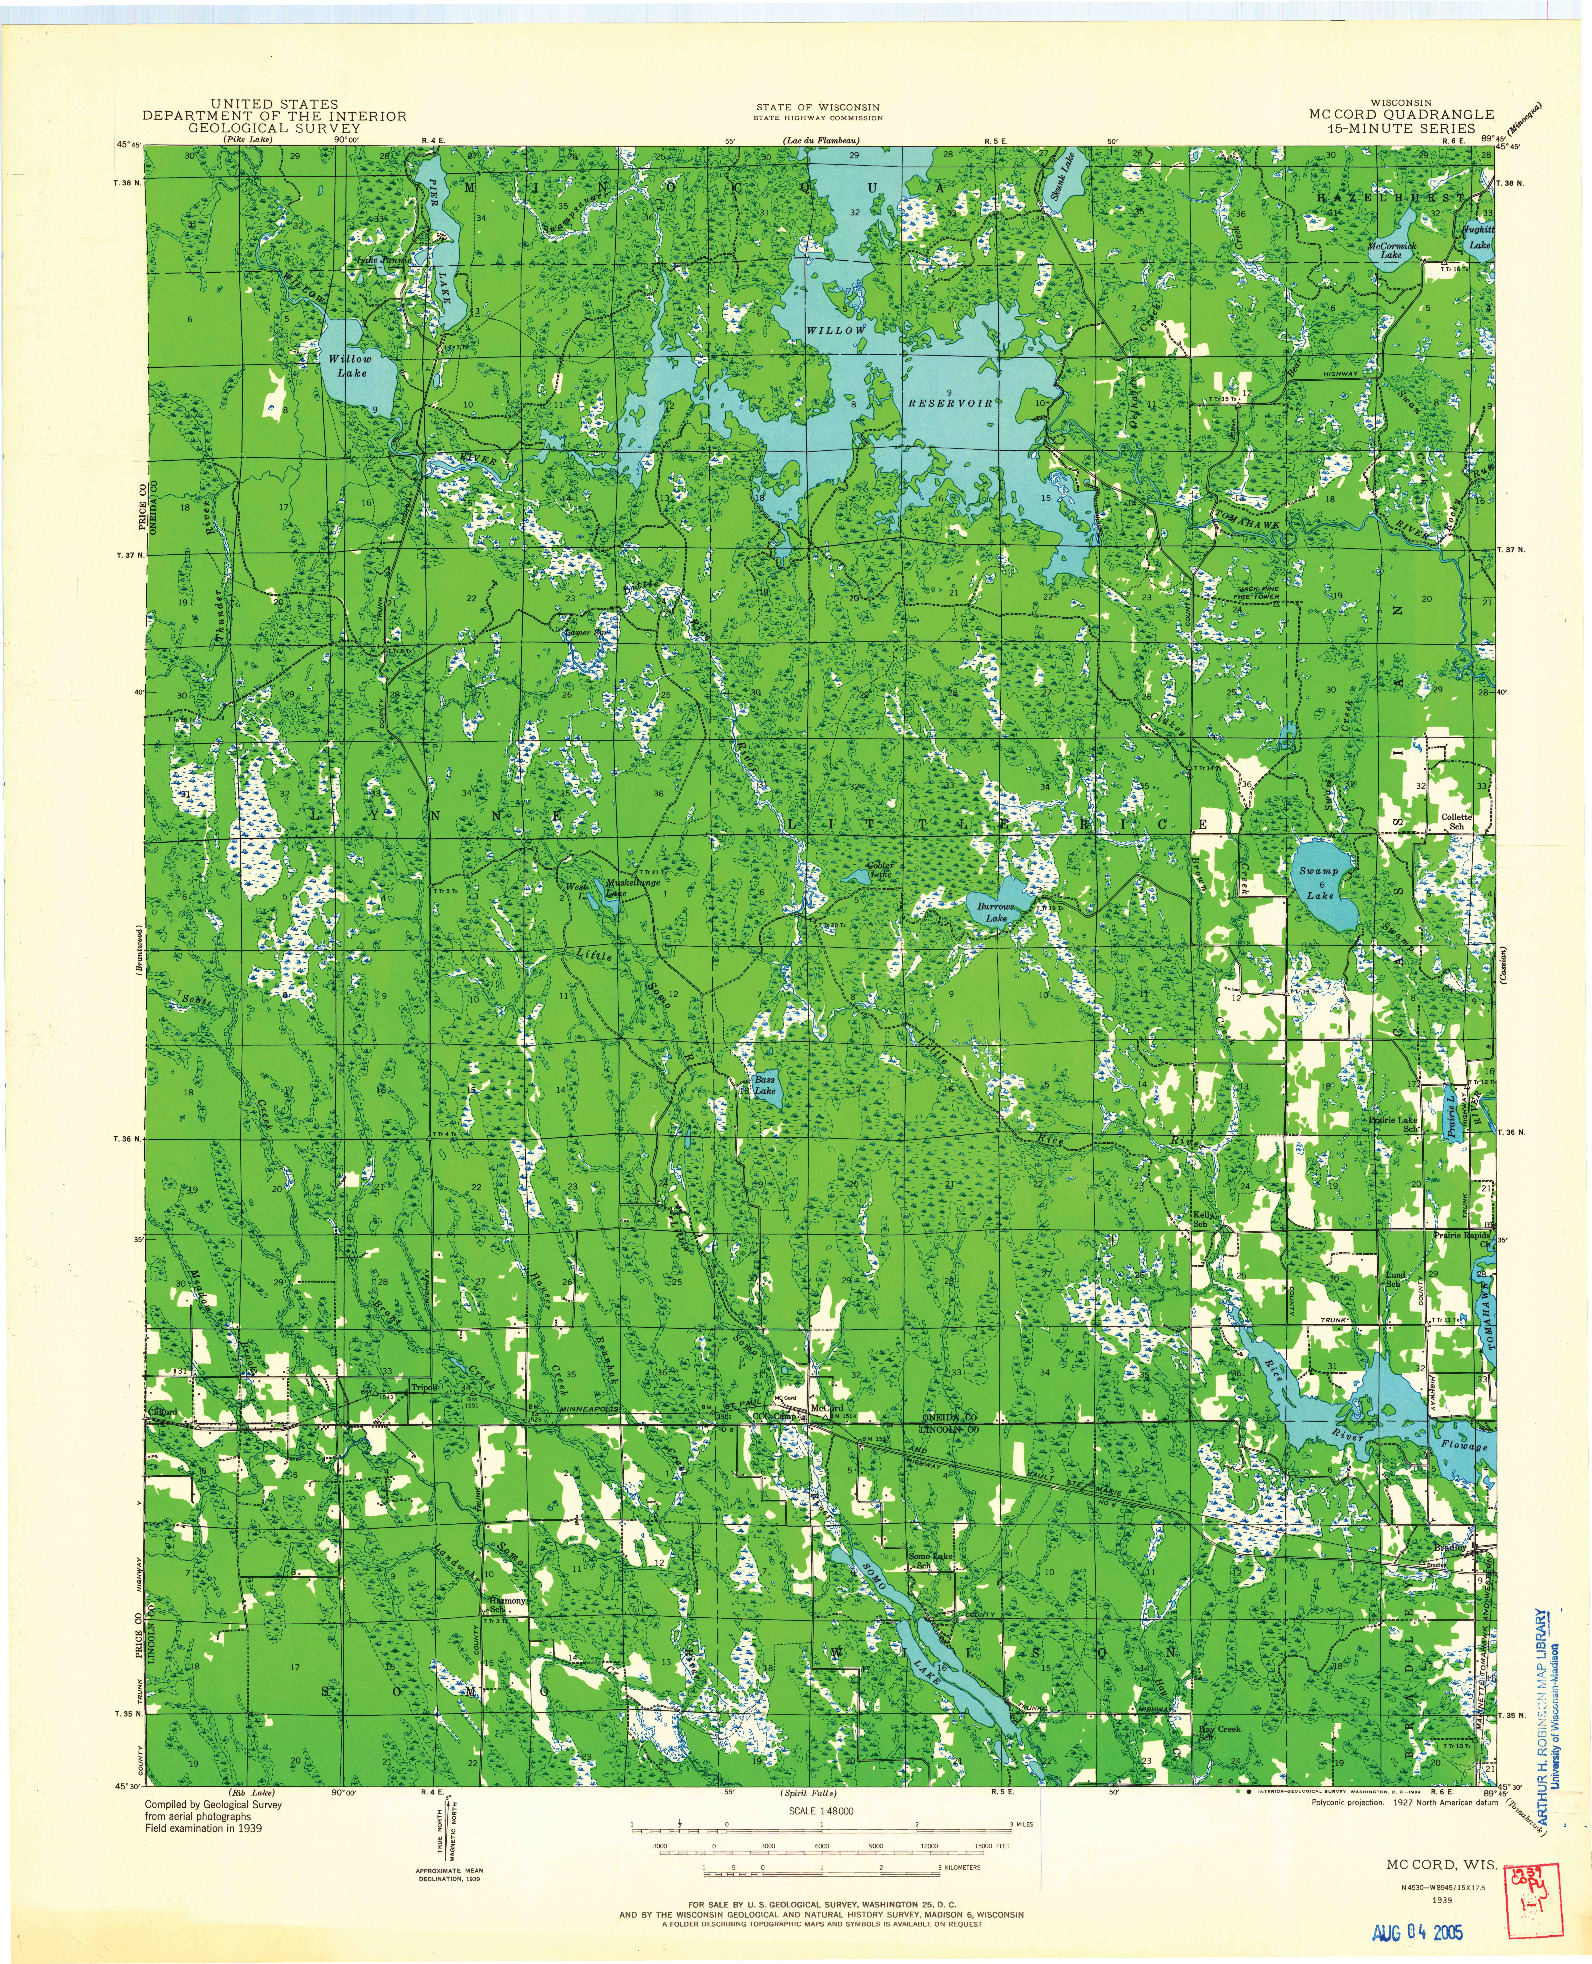 USGS 1:48000-SCALE QUADRANGLE FOR MC CORD, WI 1939